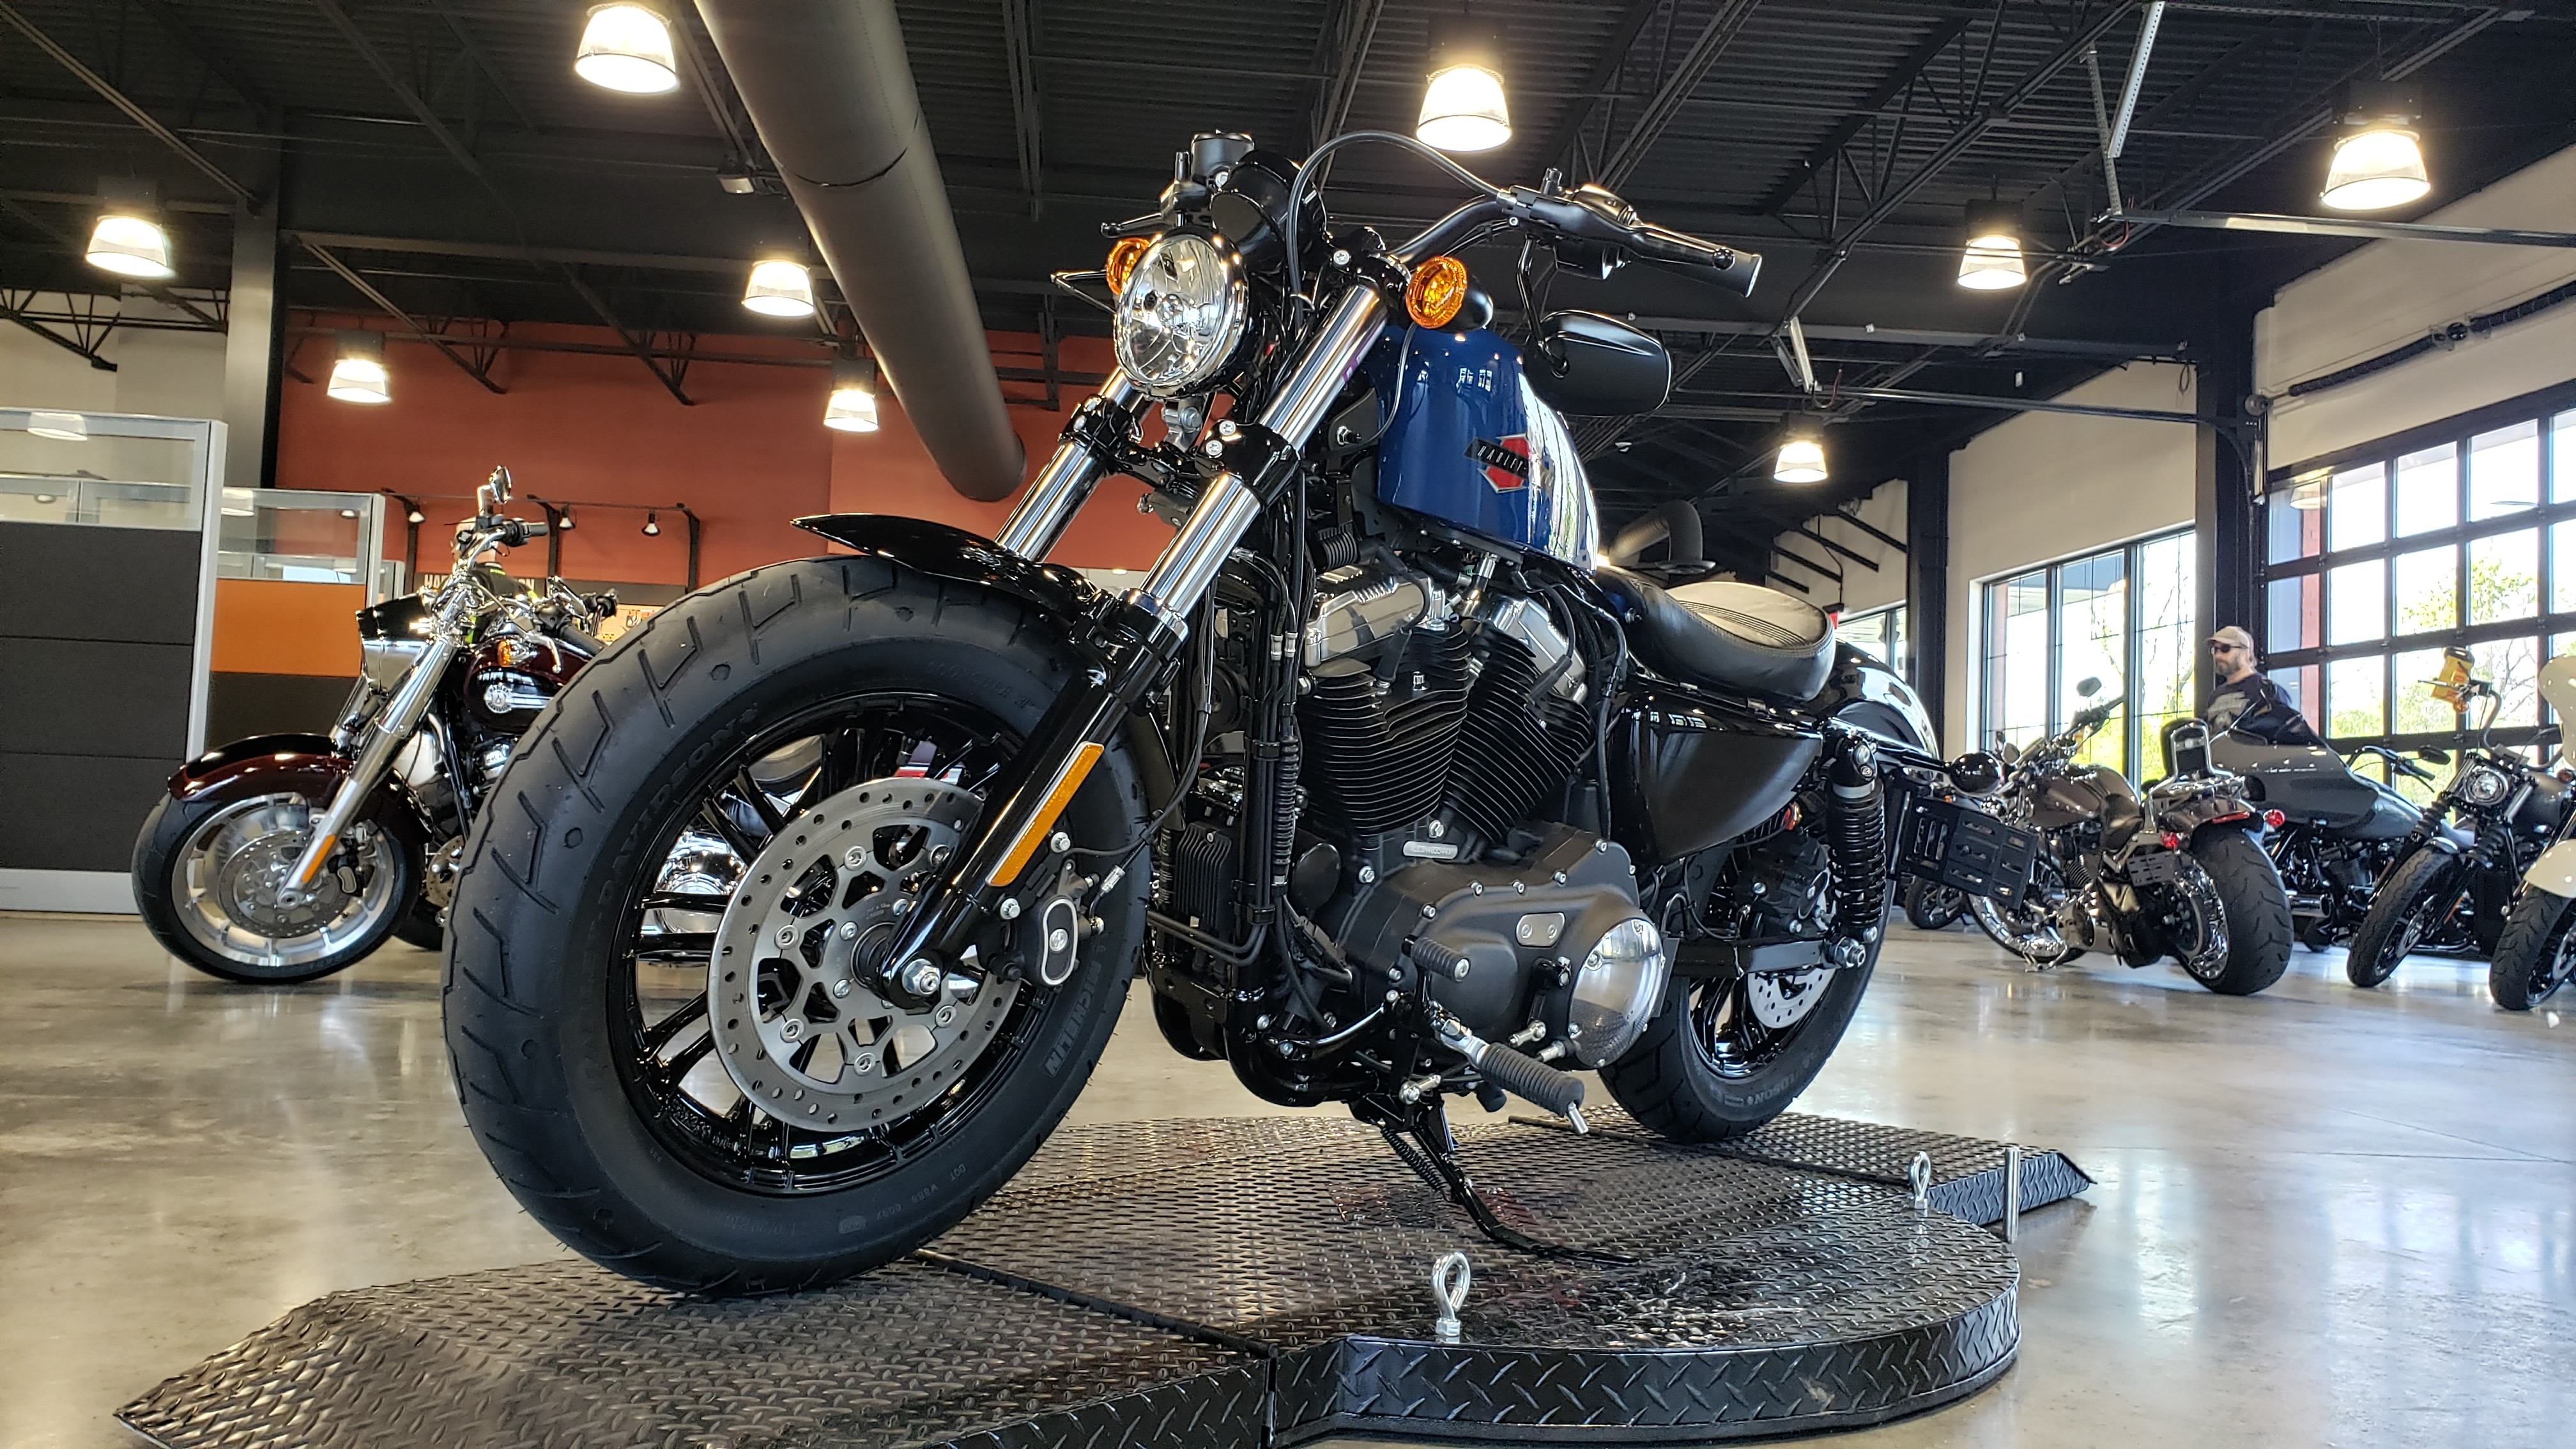 2022 Harley-Davidson Sportster Forty-Eight at Keystone Harley-Davidson